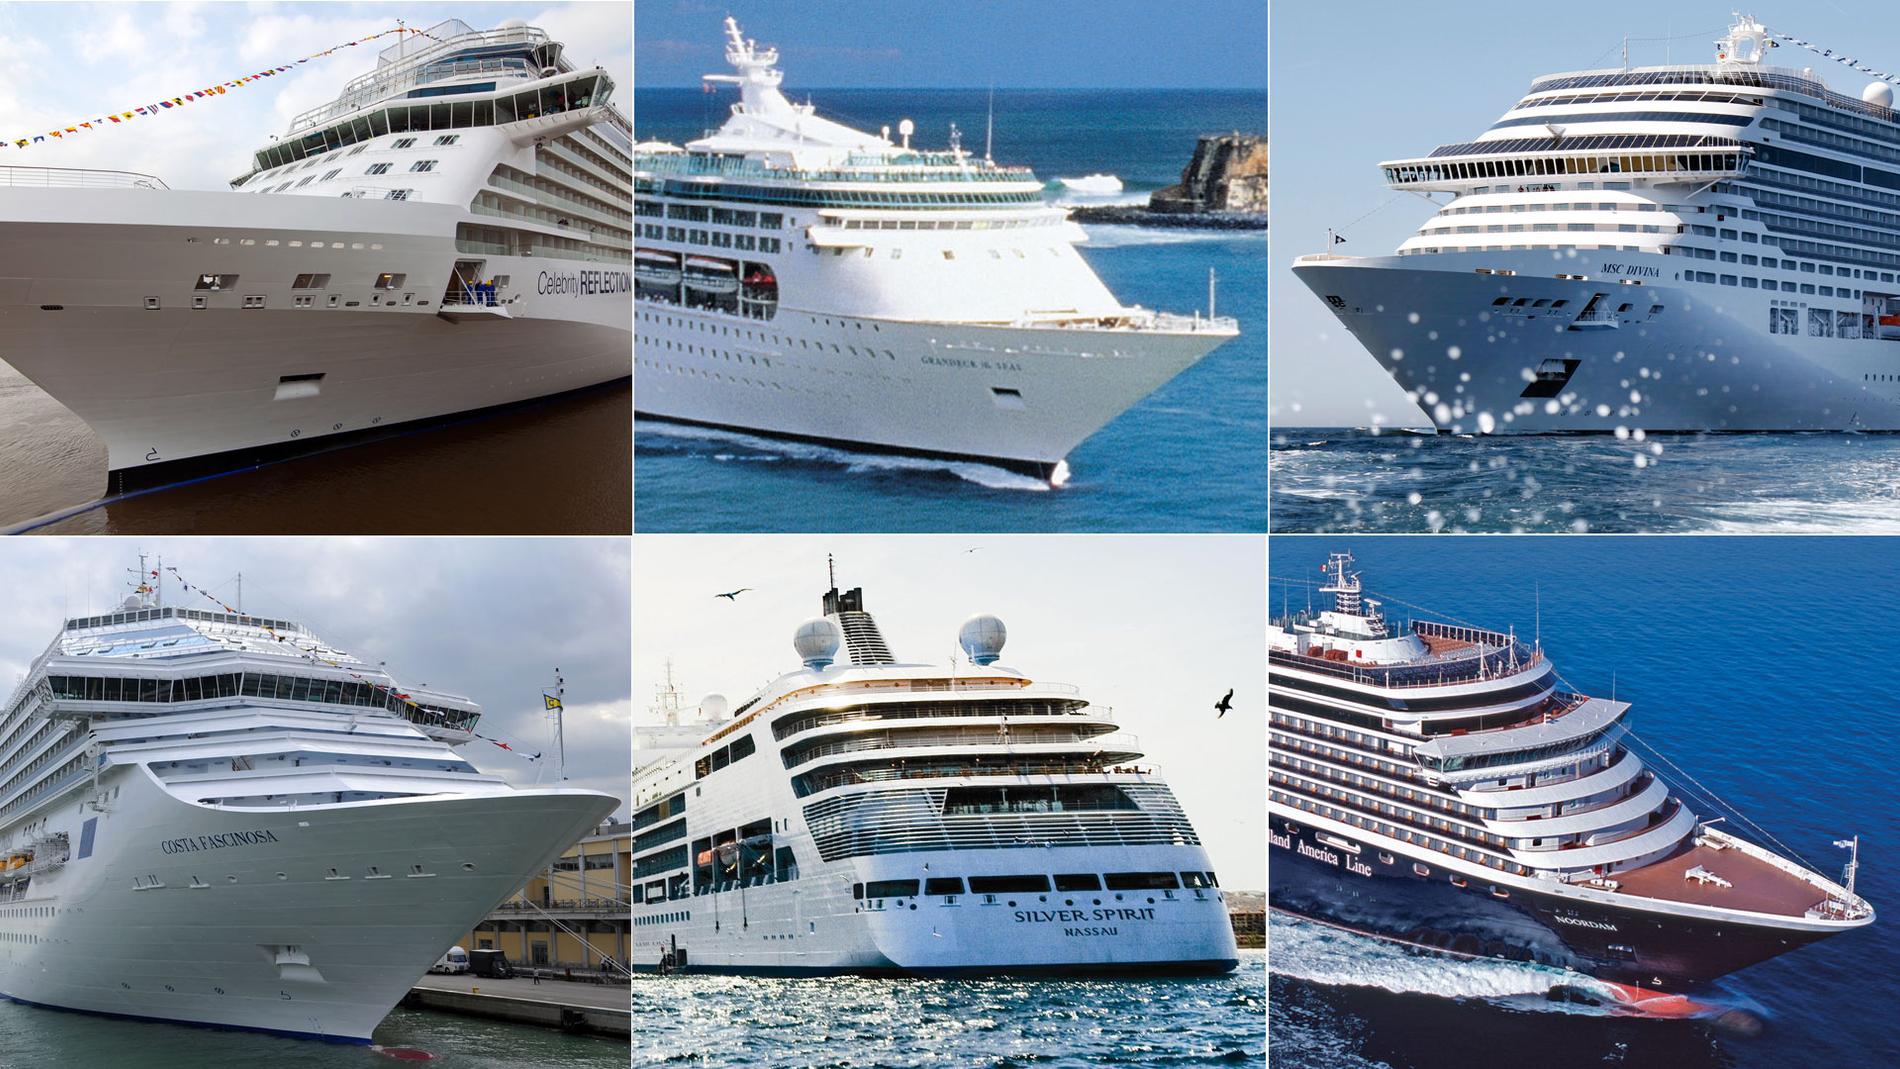 Överst från vänster: Celebrity Reflection, Grandeur of the Seas och MSC Divina. Underst från vänster: Costa Fascinosa, Silver Spirit och Noordam.